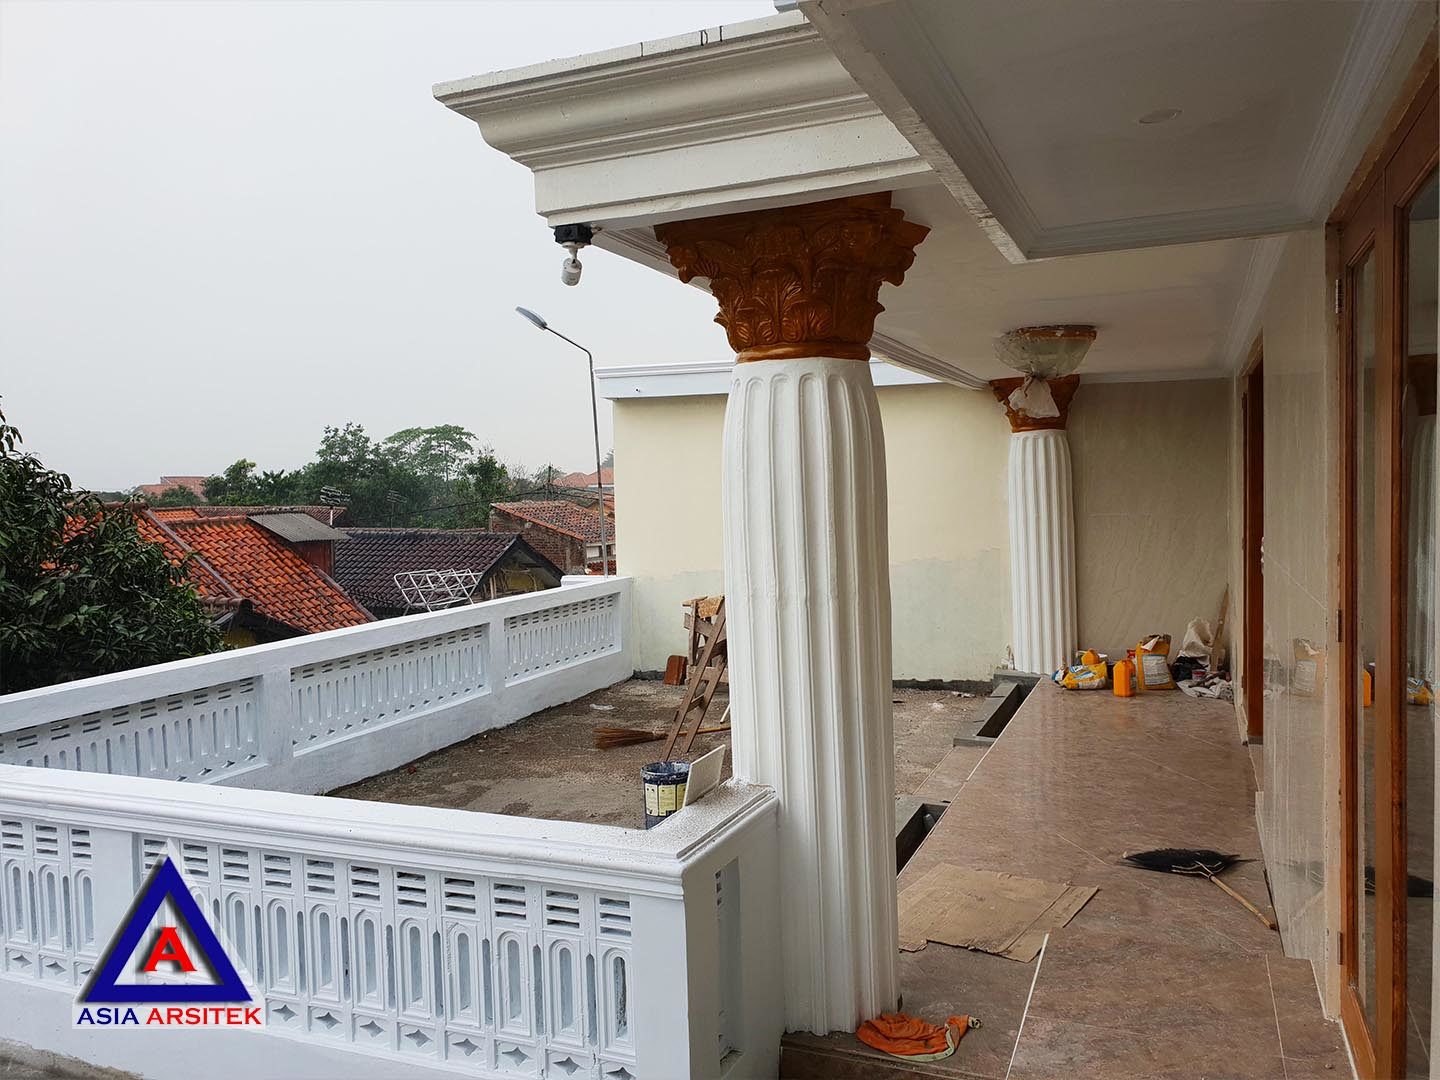 Realisasi Desain Rumah Klasik Classic Mewah Ibu Iis Di Bandung Kunjungan Feb 2019